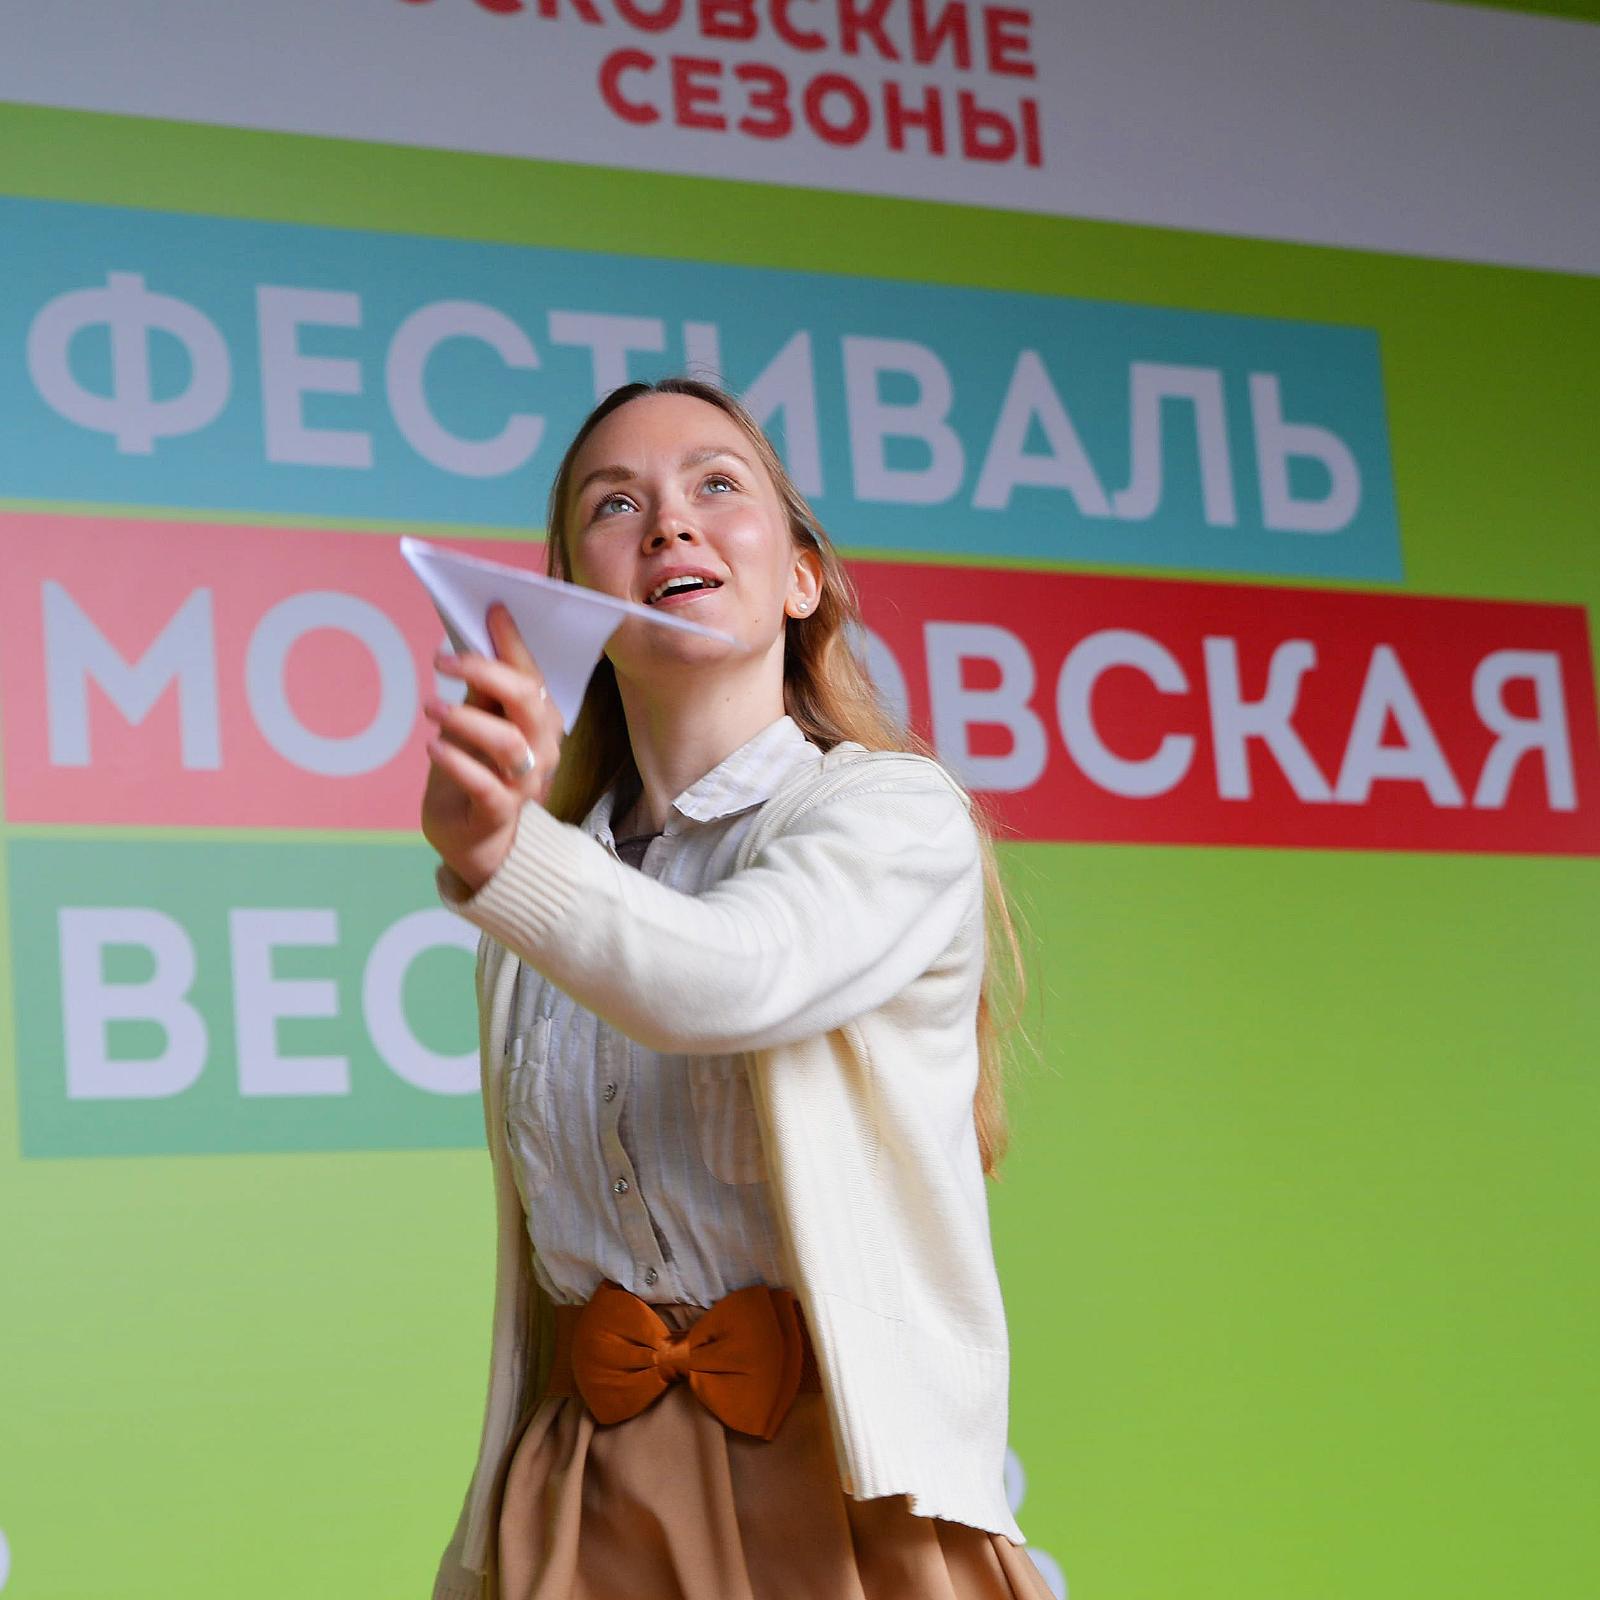 Дню Победы посвящается: специальная программа мастер-классов для детей на фестивале «Московская весна»